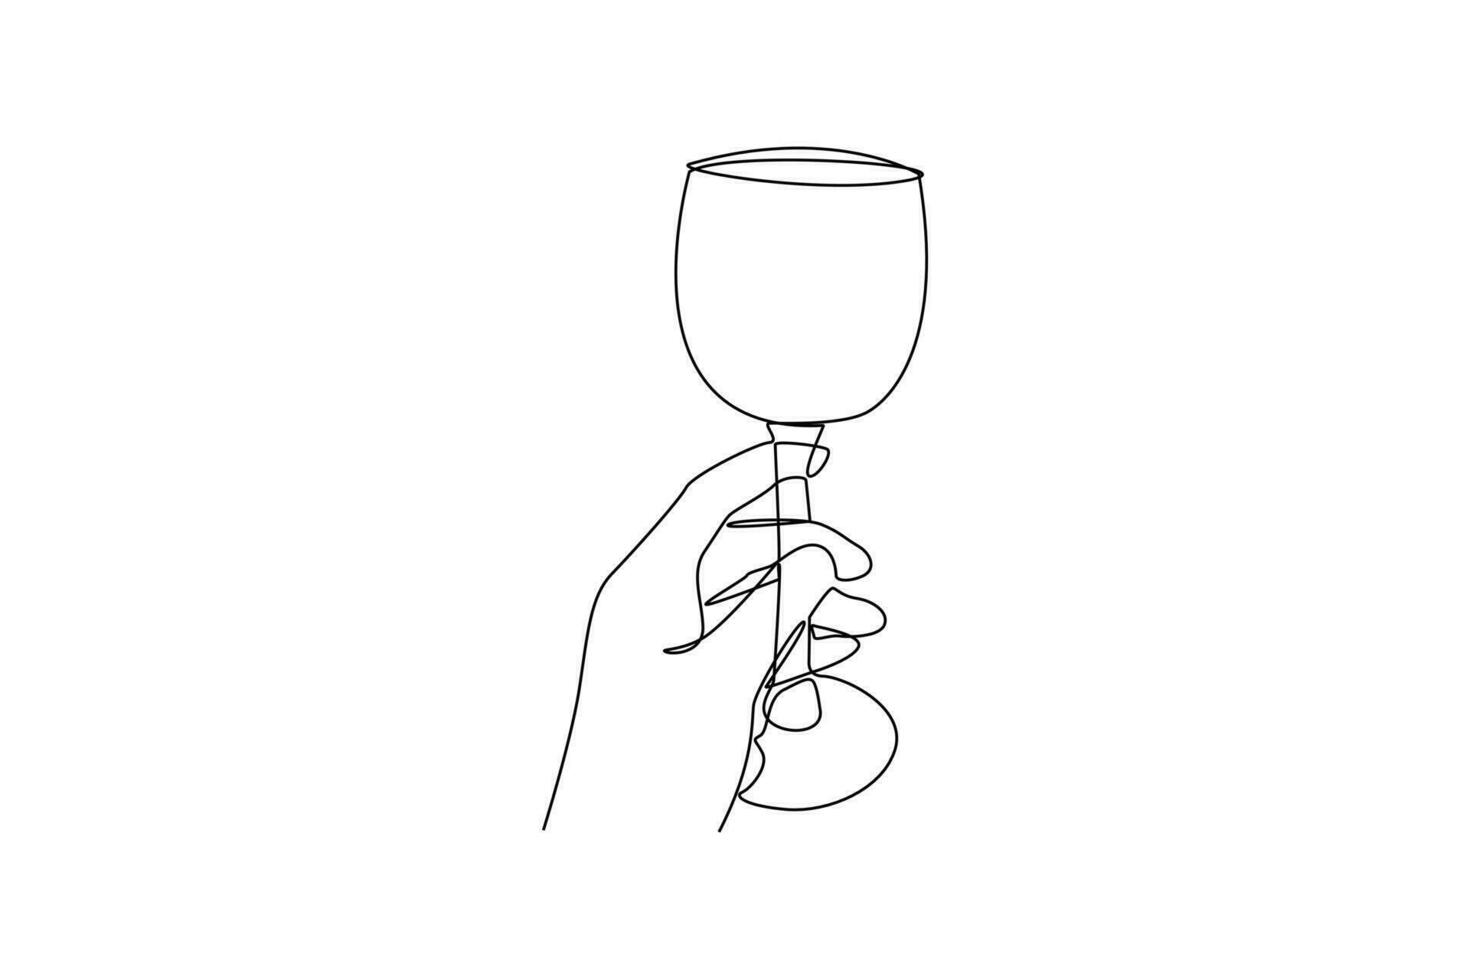 single een lijn tekening wijn glas. serviesgoed concept. doorlopend lijn trek ontwerp grafisch vector illustratie.